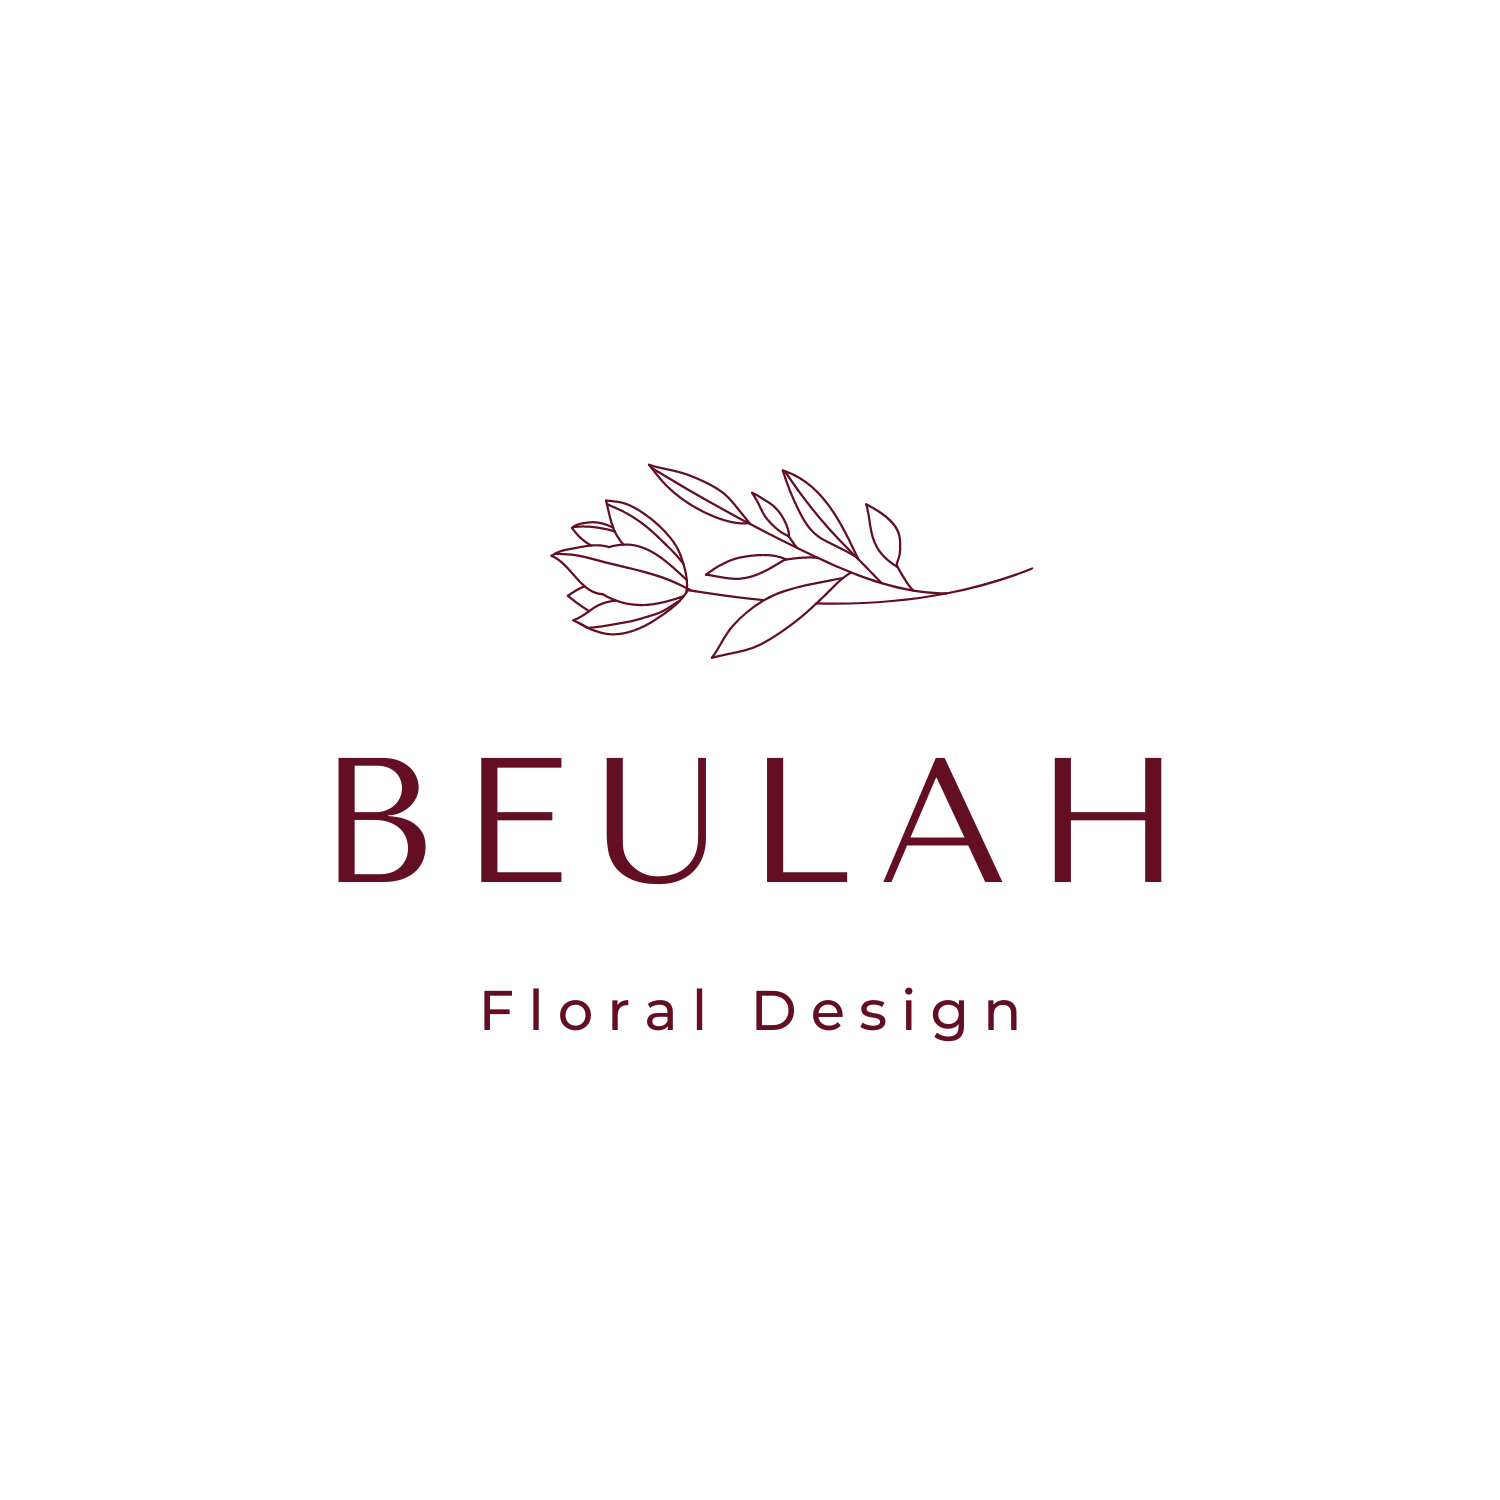 Beulah Floral Design